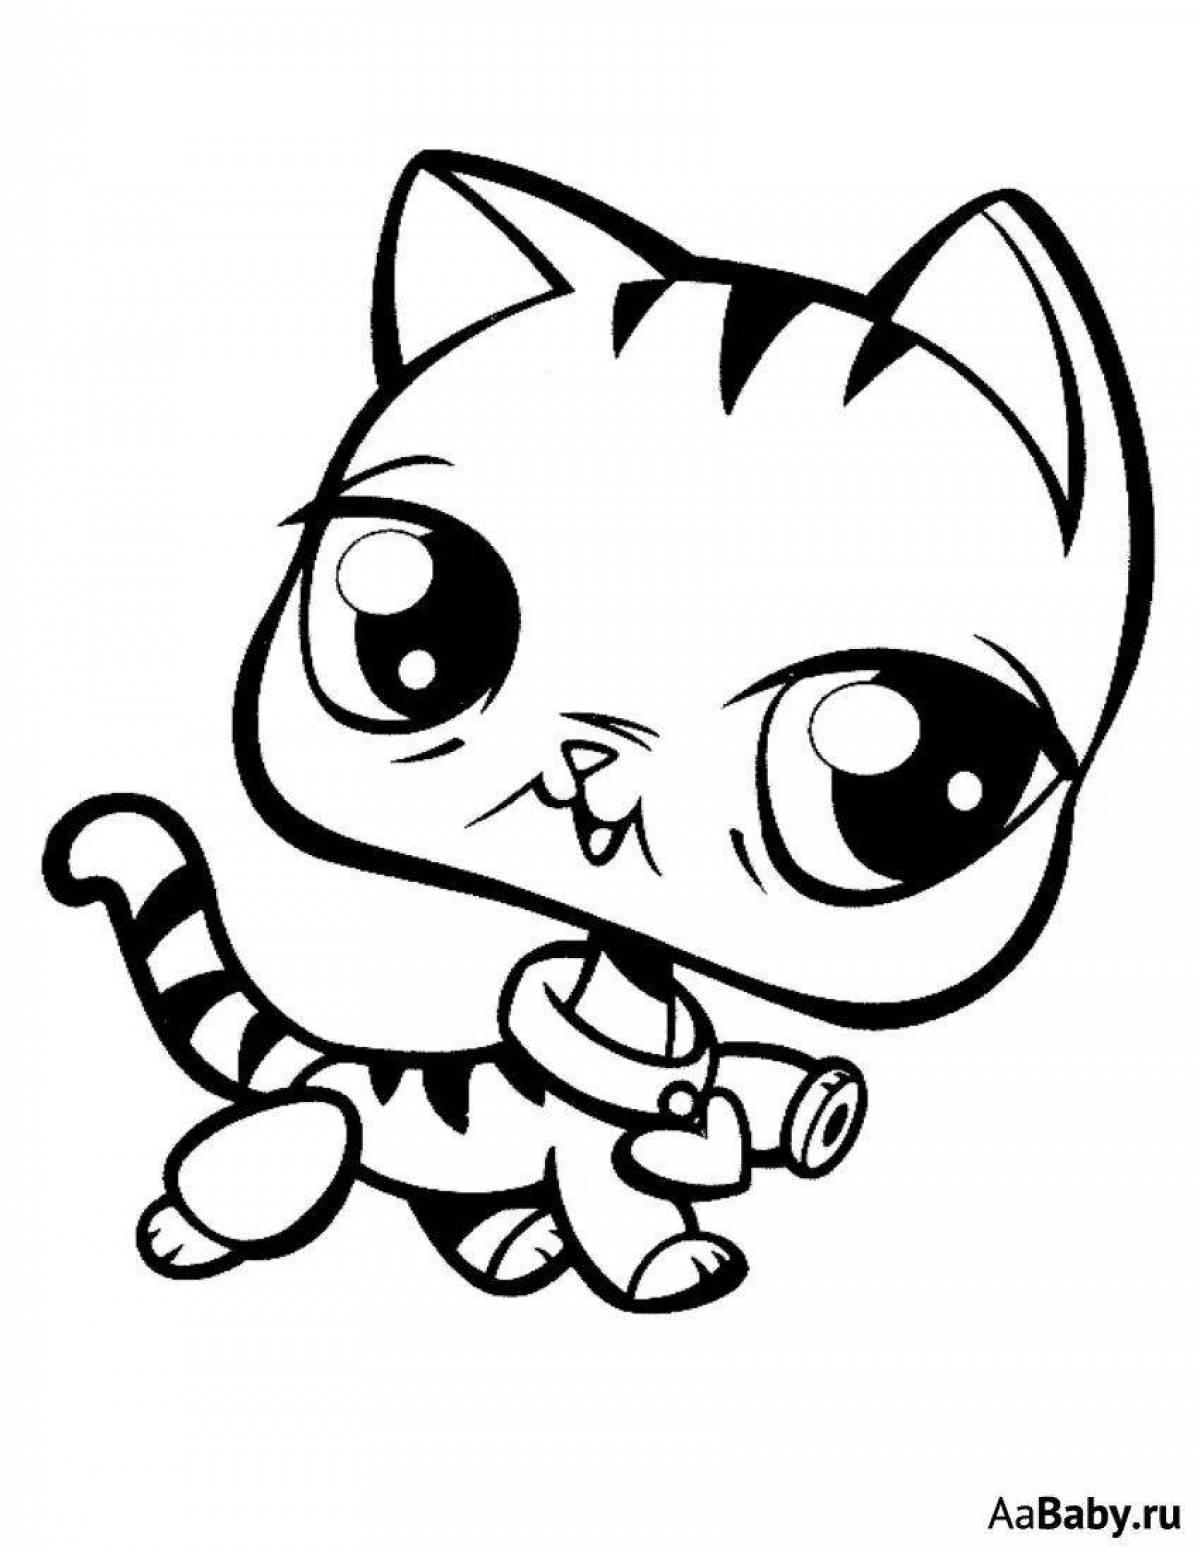 Fun cute cat drawing